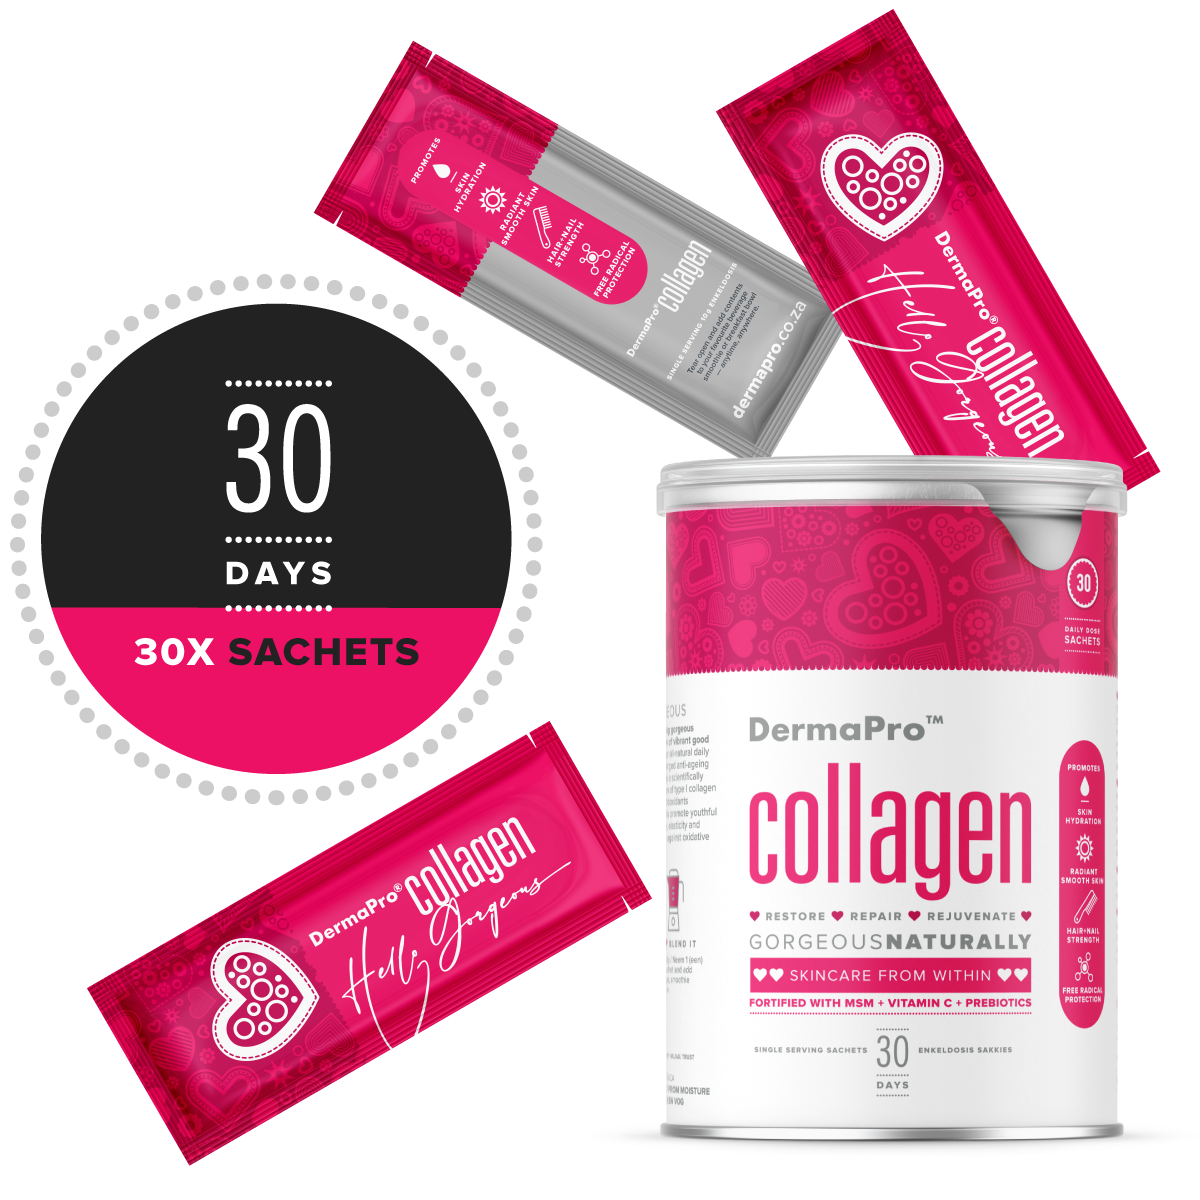 DermaPro Collagen Best Collagen For Skin